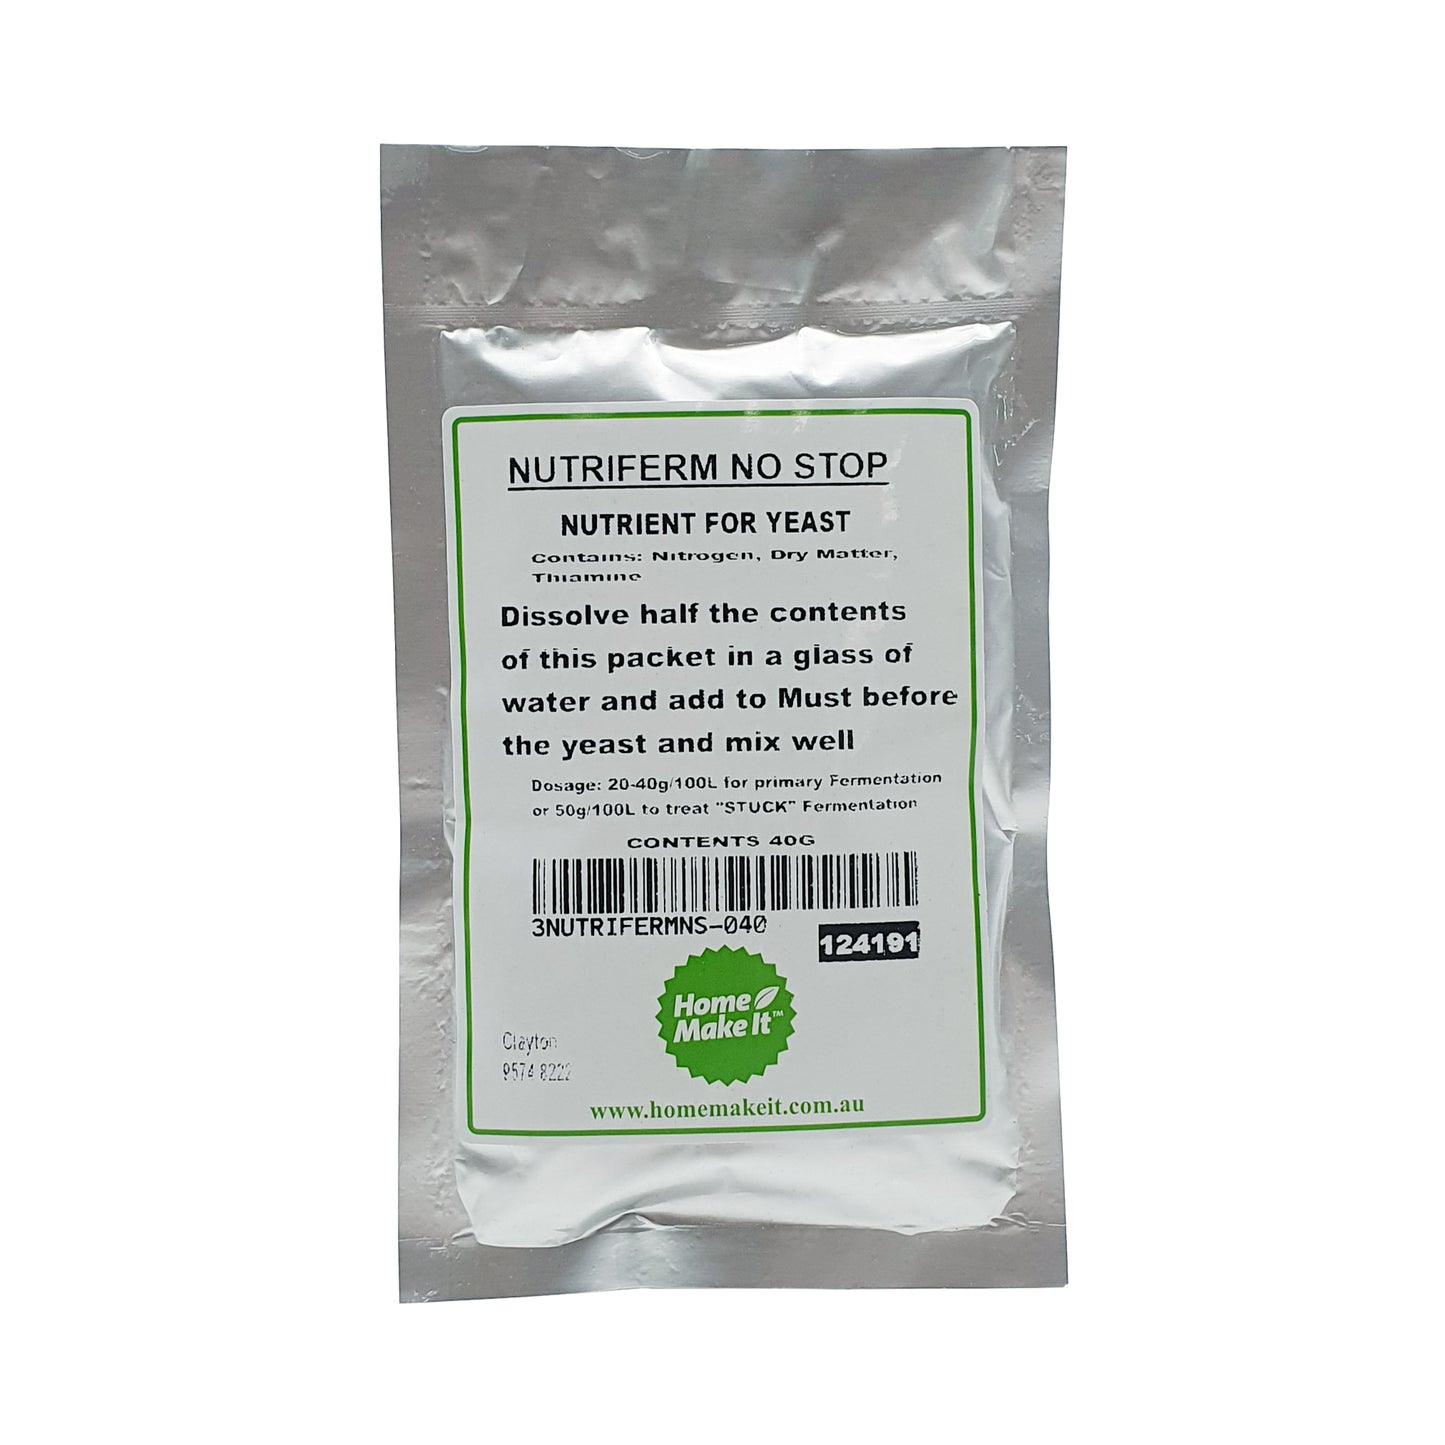 40 gram bag of nutriferm no stop to treat stuck fermentations. 